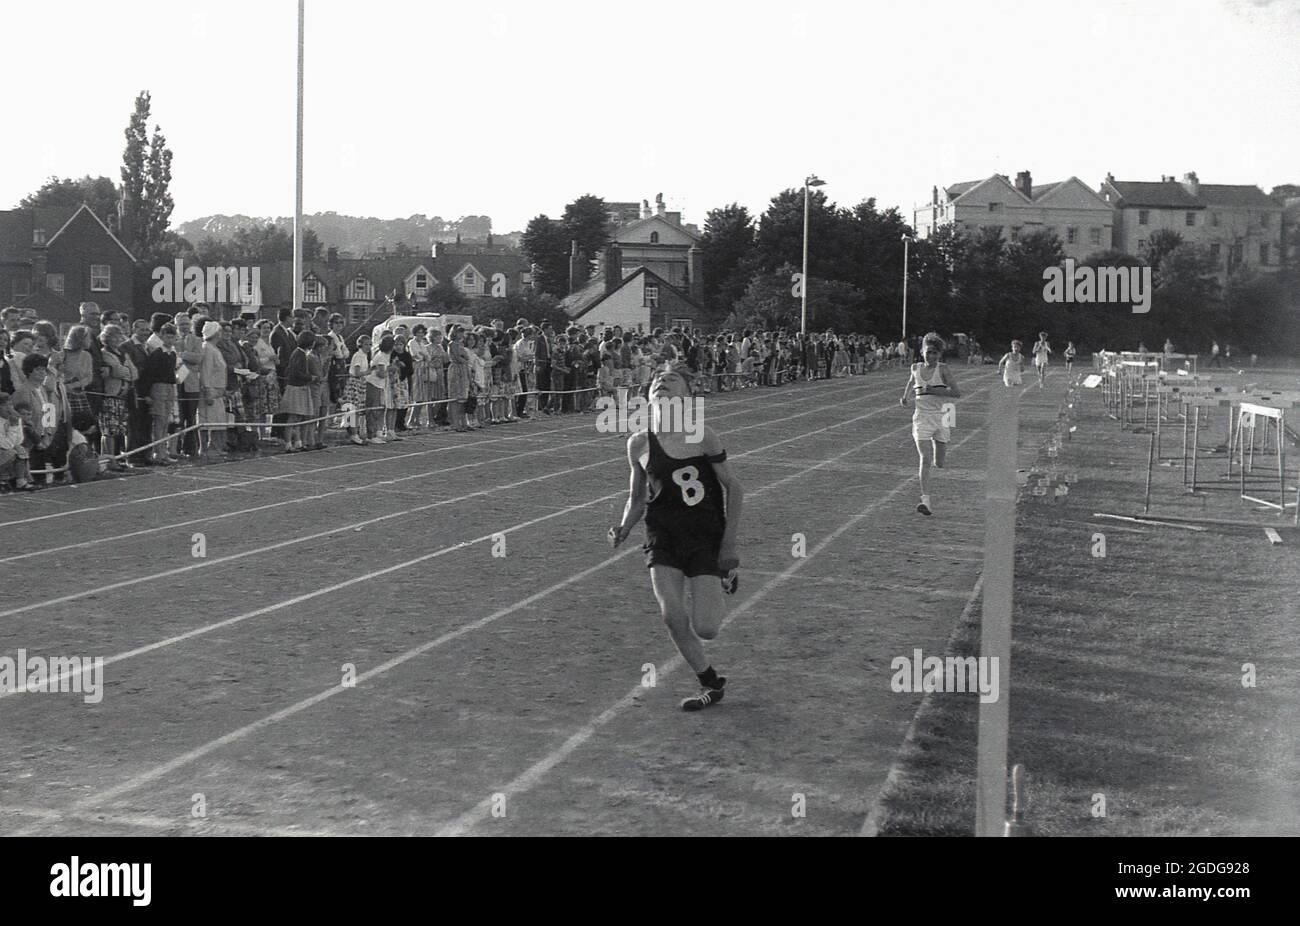 1964, storico, fuori in una giornata sportiva delle scuole della contea e guardato da spettatori di genitori e famiglia, un ragazzo adolescente che corre su una pista di cenere facendo uno sforzo enorme per terminare la corsa al primo posto, Exeter, Devon, Inghilterra, Regno Unito. Foto Stock